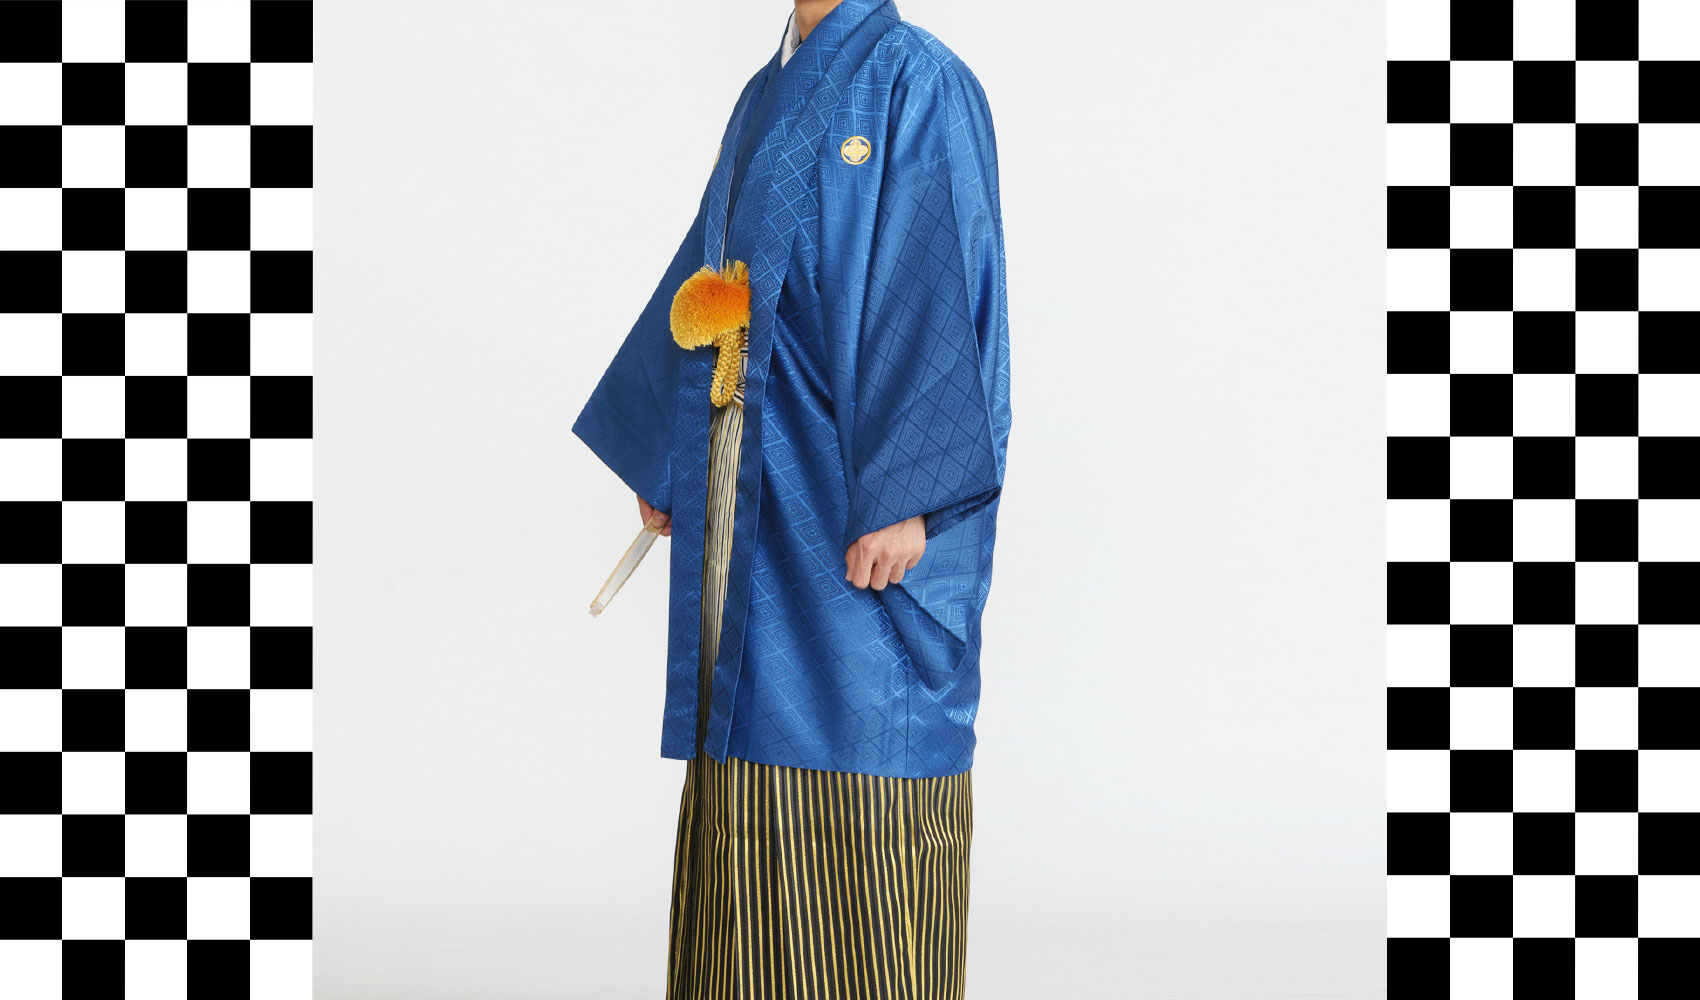 男性袴コレクション6。羽織と着物が青色、袴が銀黒とゴールドが入った袴のコーデ